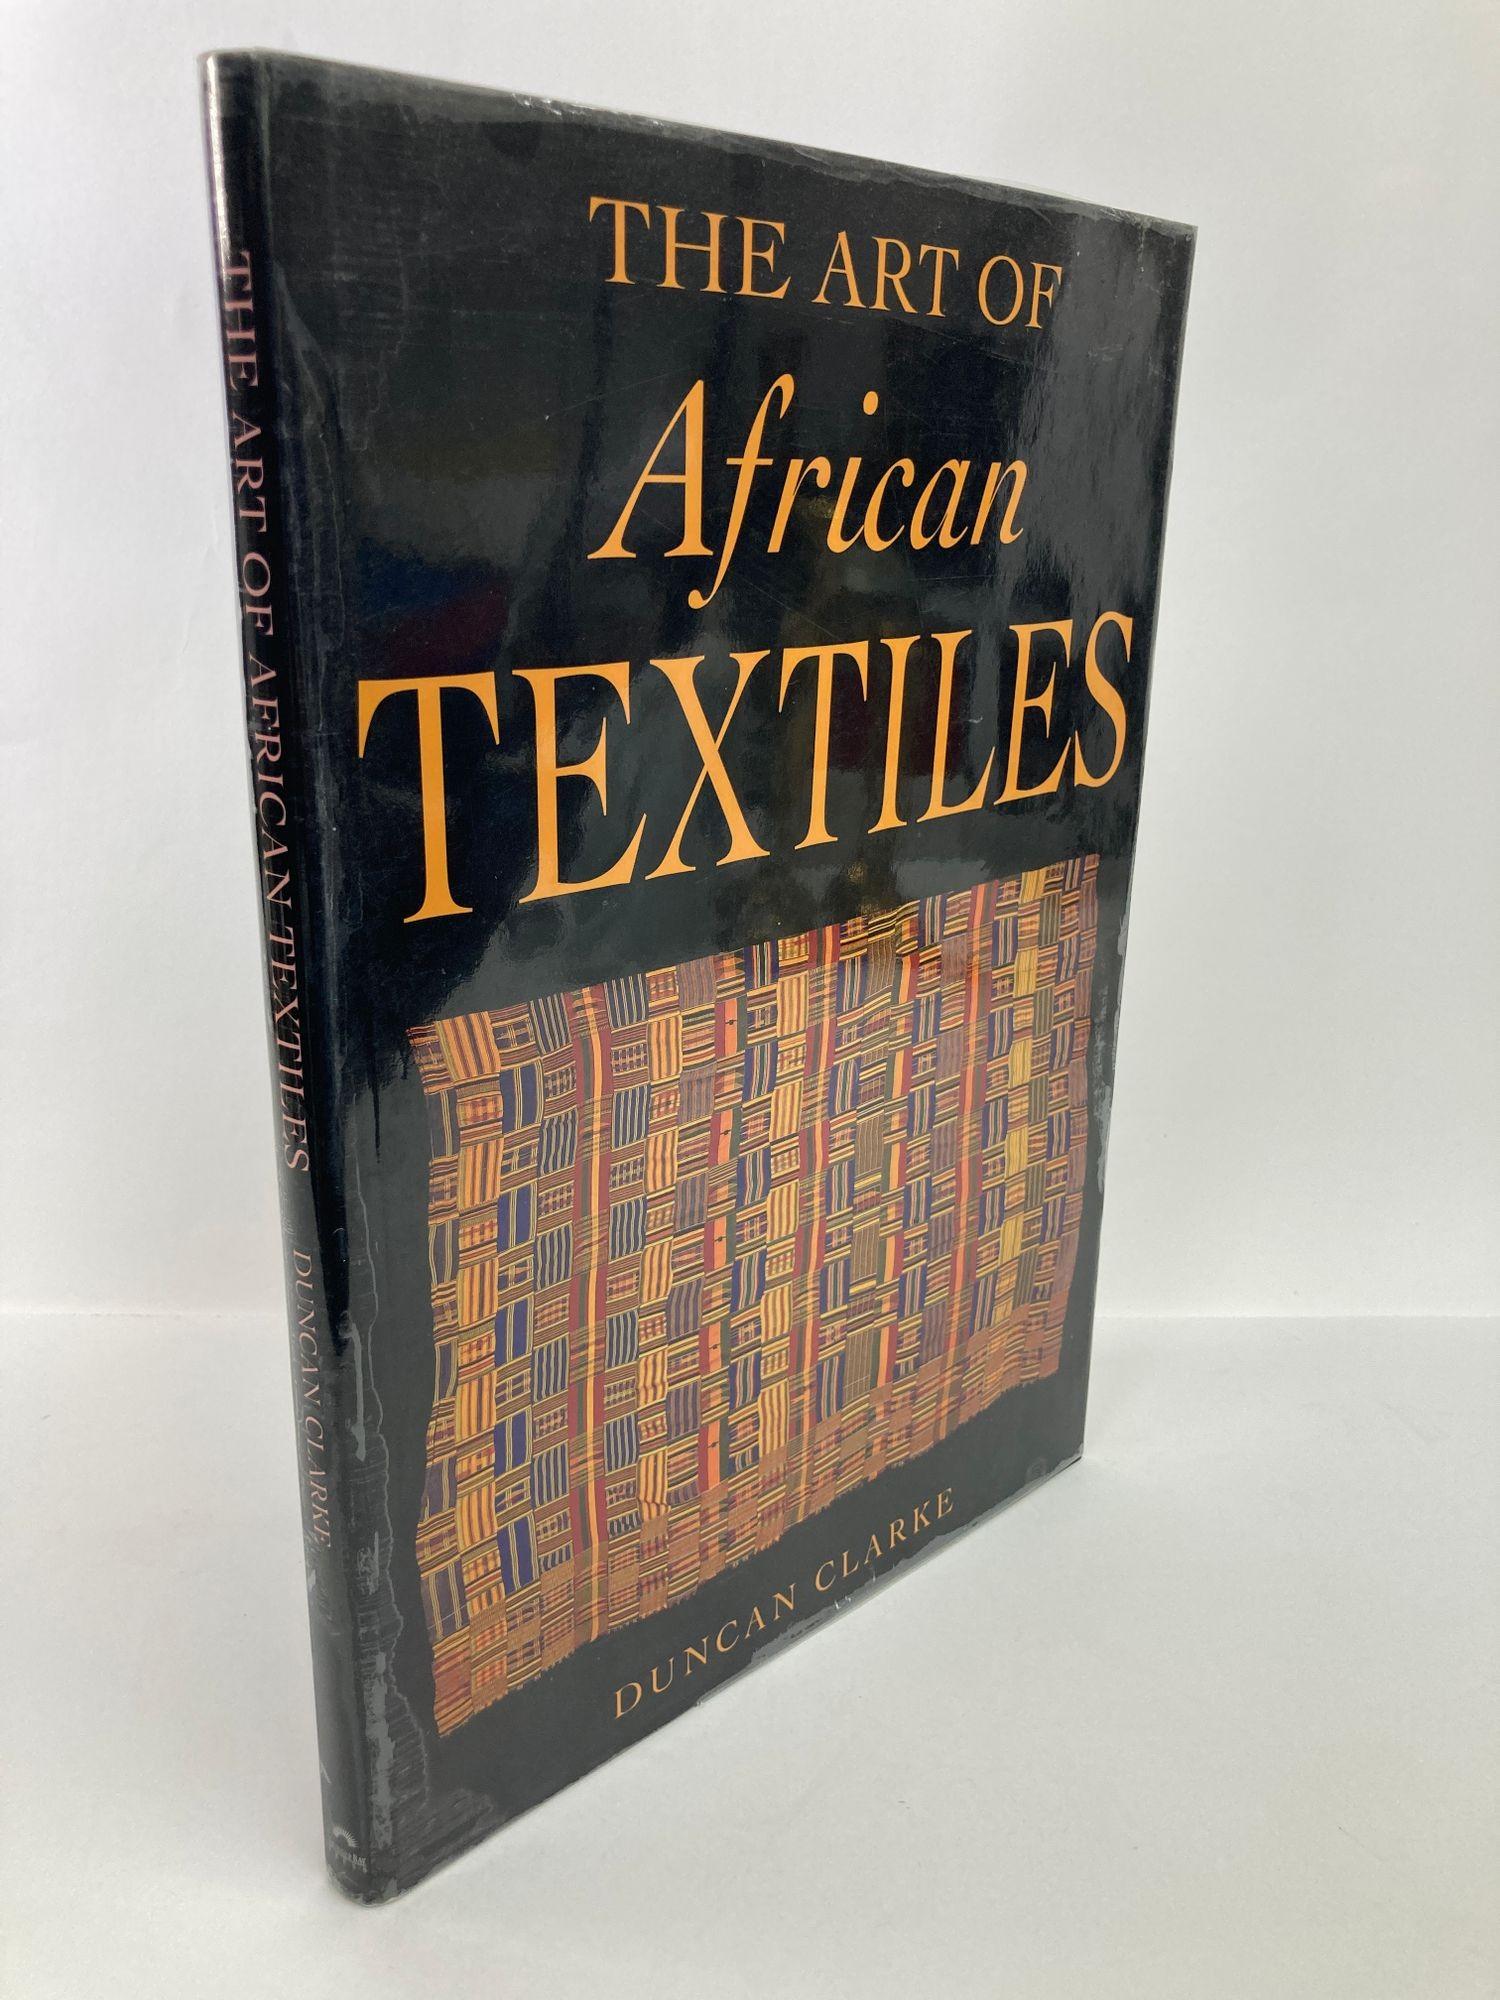 L'art des textiles africains
Clarke, Duncan. Publié par Thunder Bay, San Diego, 2002.
Ce livre propose un voyage fascinant à travers l'histoire et la culture des textiles en Afrique, à partir de la collection privée de Karun Thakar, largement